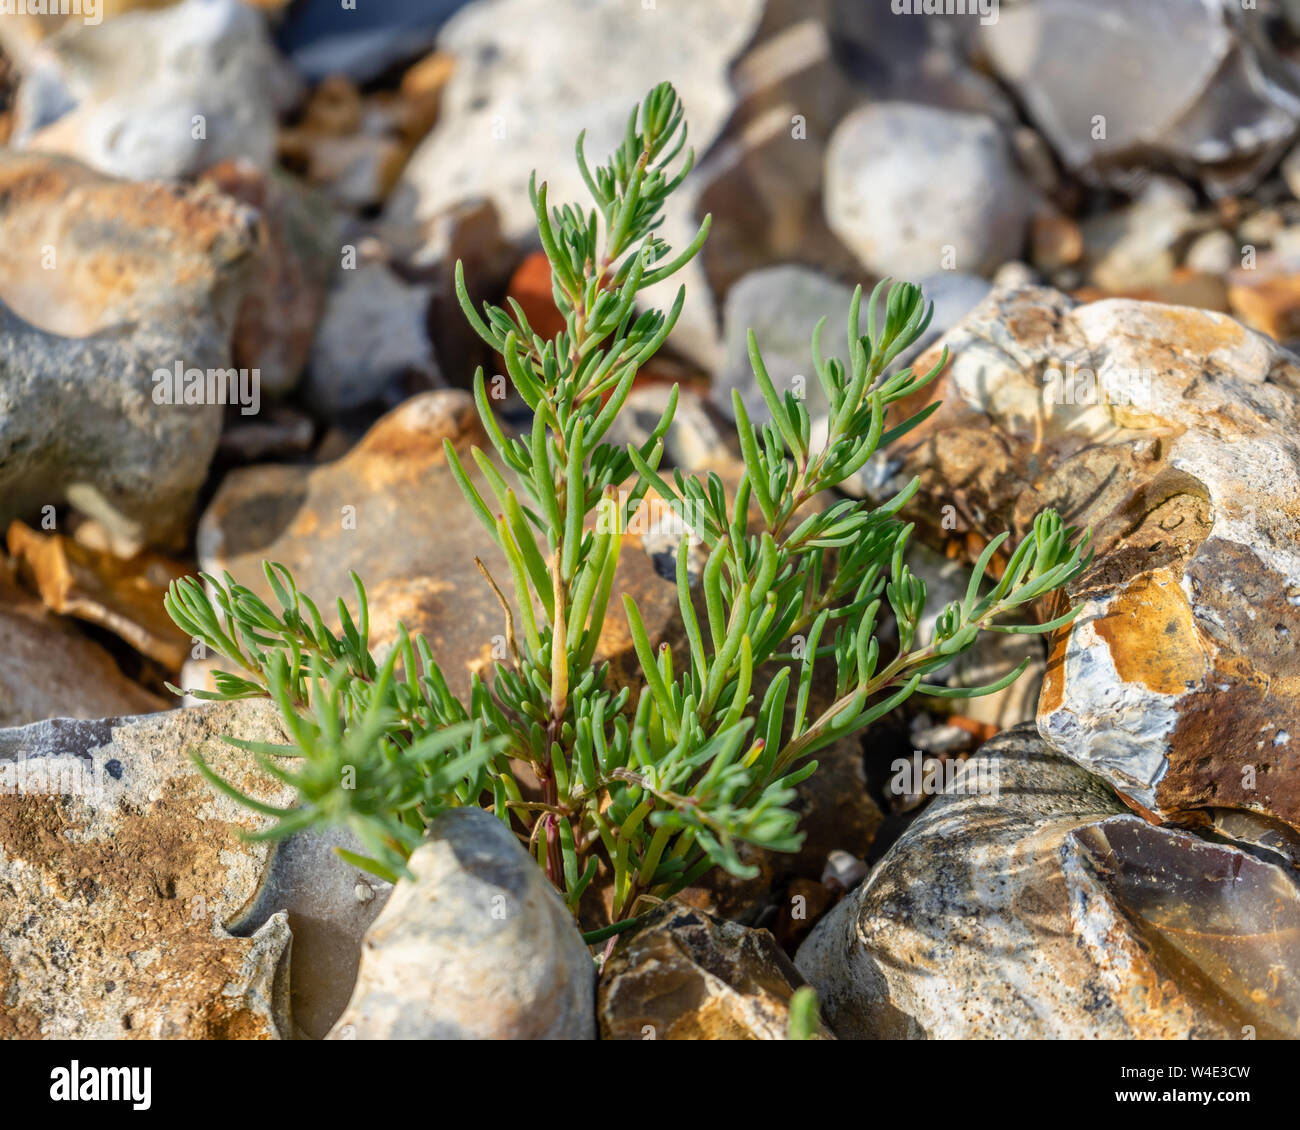 Un joven rock samphire planta (Crithmum) que emergen de la tierra rocosa en pantanos Farlington durante el verano de 2019, en Portsmouth, Inglaterra Foto de stock